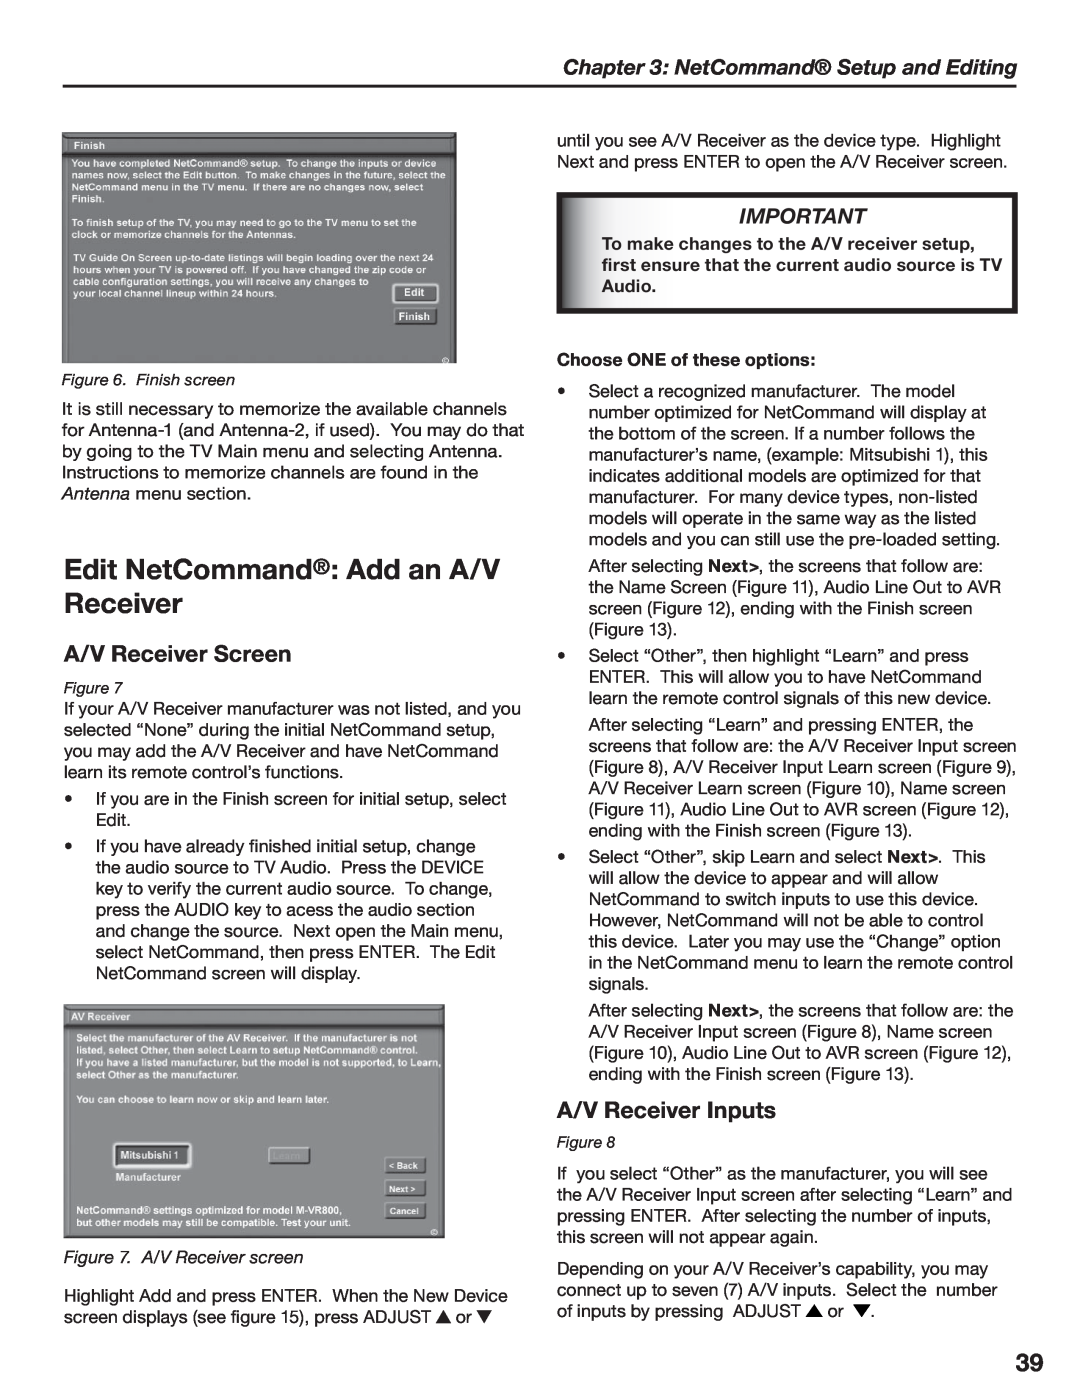 Mitsubishi Electronics LT-3780, LT-3280 manual Edit NetCommand Add an A/V Receiver, A/V Receiver Screen, A/V Receiver Inputs 